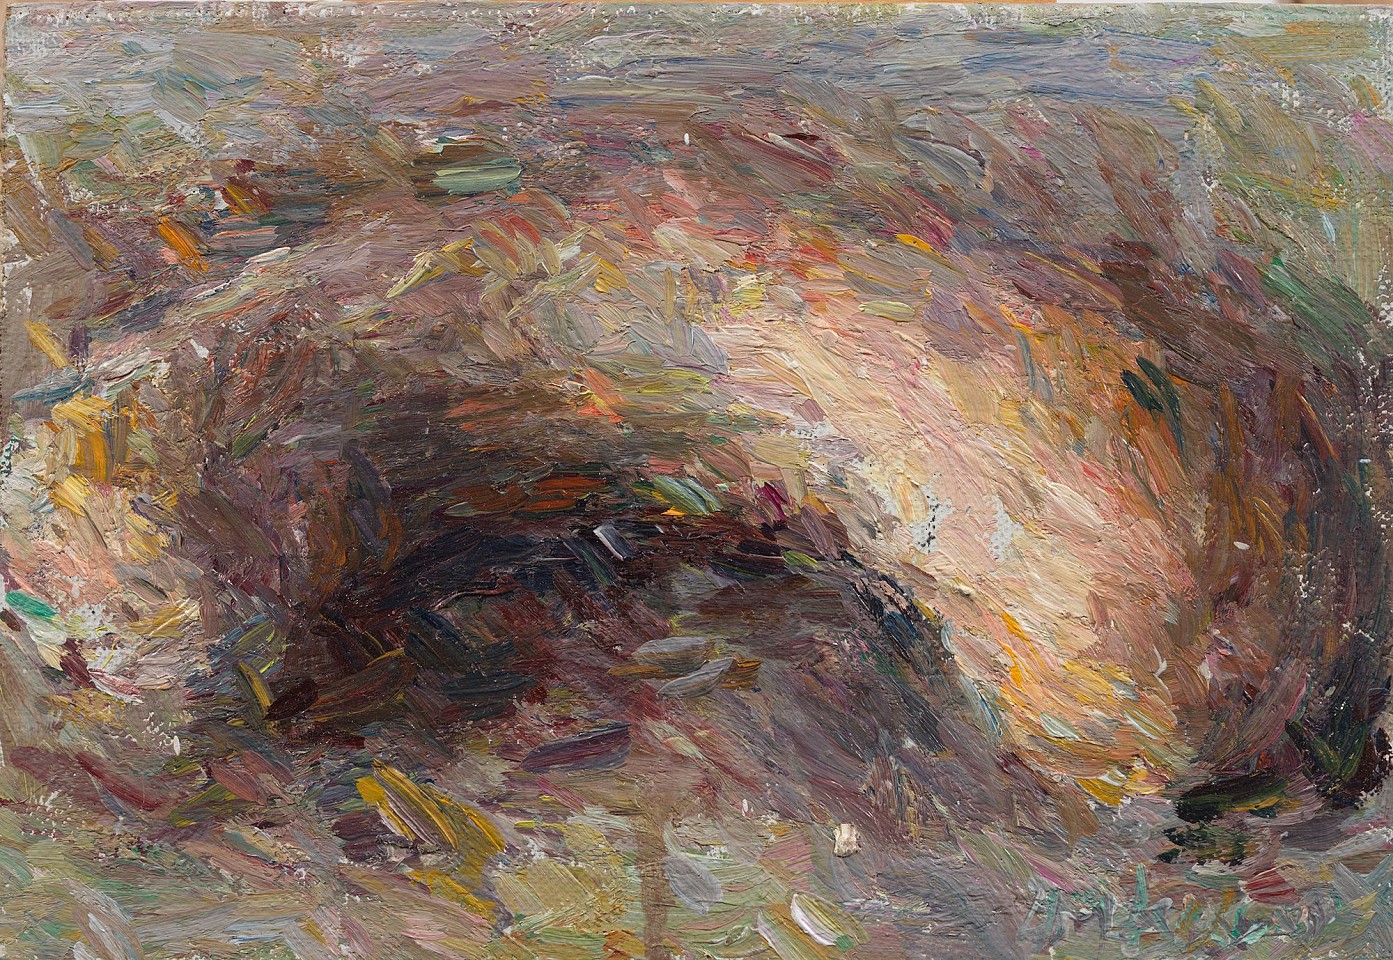 Daniel Enkaoua, Citrouille courbée
2019, Oil on canvas mounted on wood